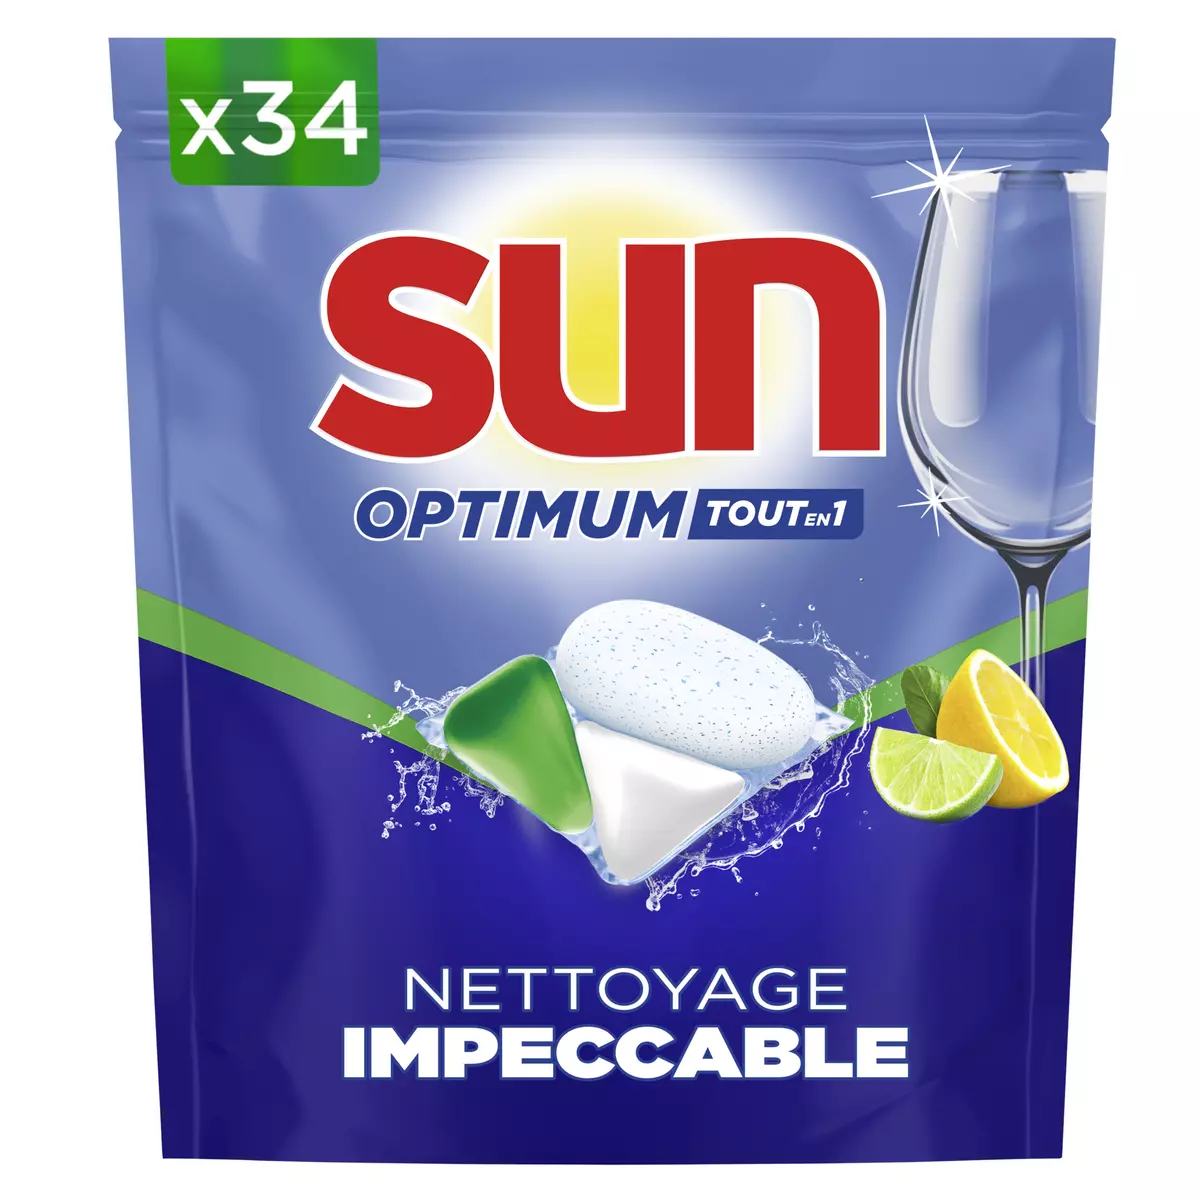 SUN Optimum tablette lave-vaisselle tout en 1 parfum agrumes 34